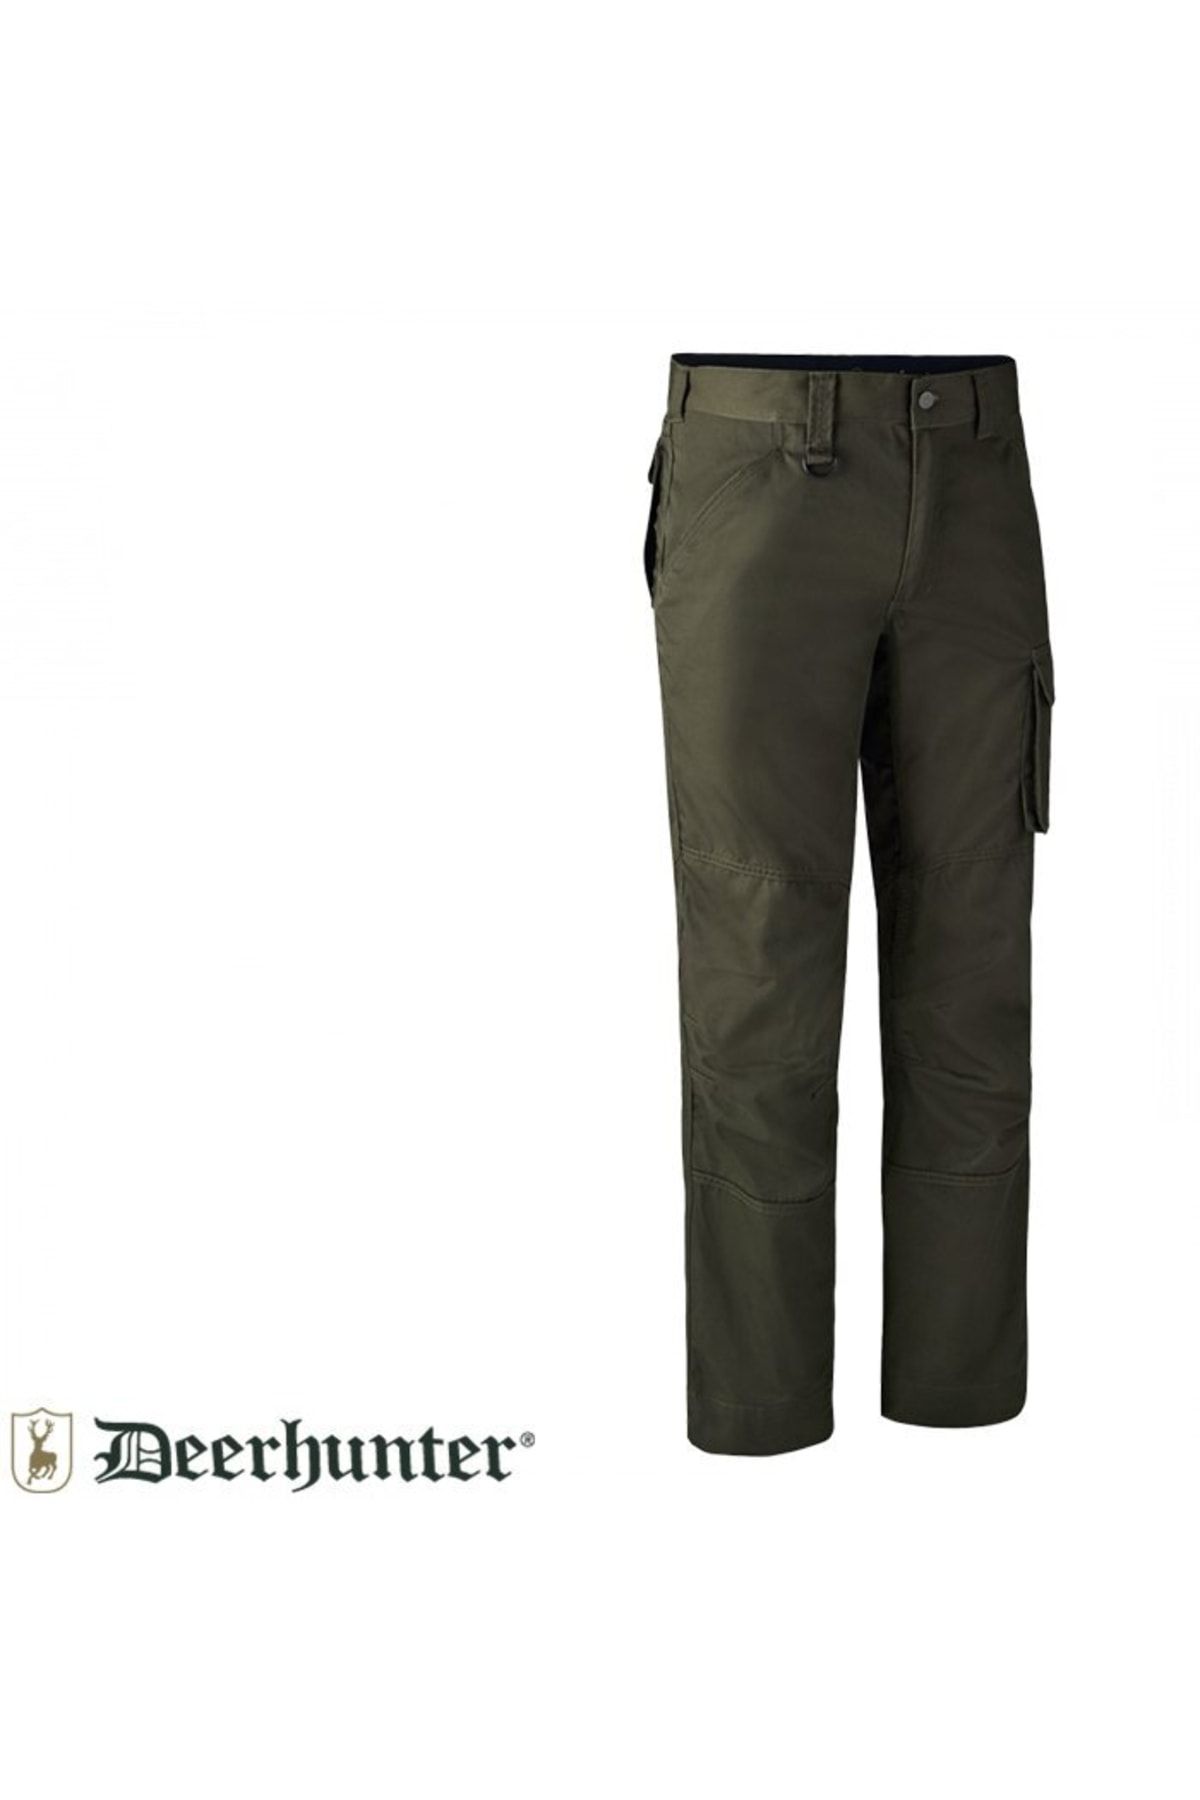 Deerhunter Rogaland 353 Koyu Yeşil Pantolon 48